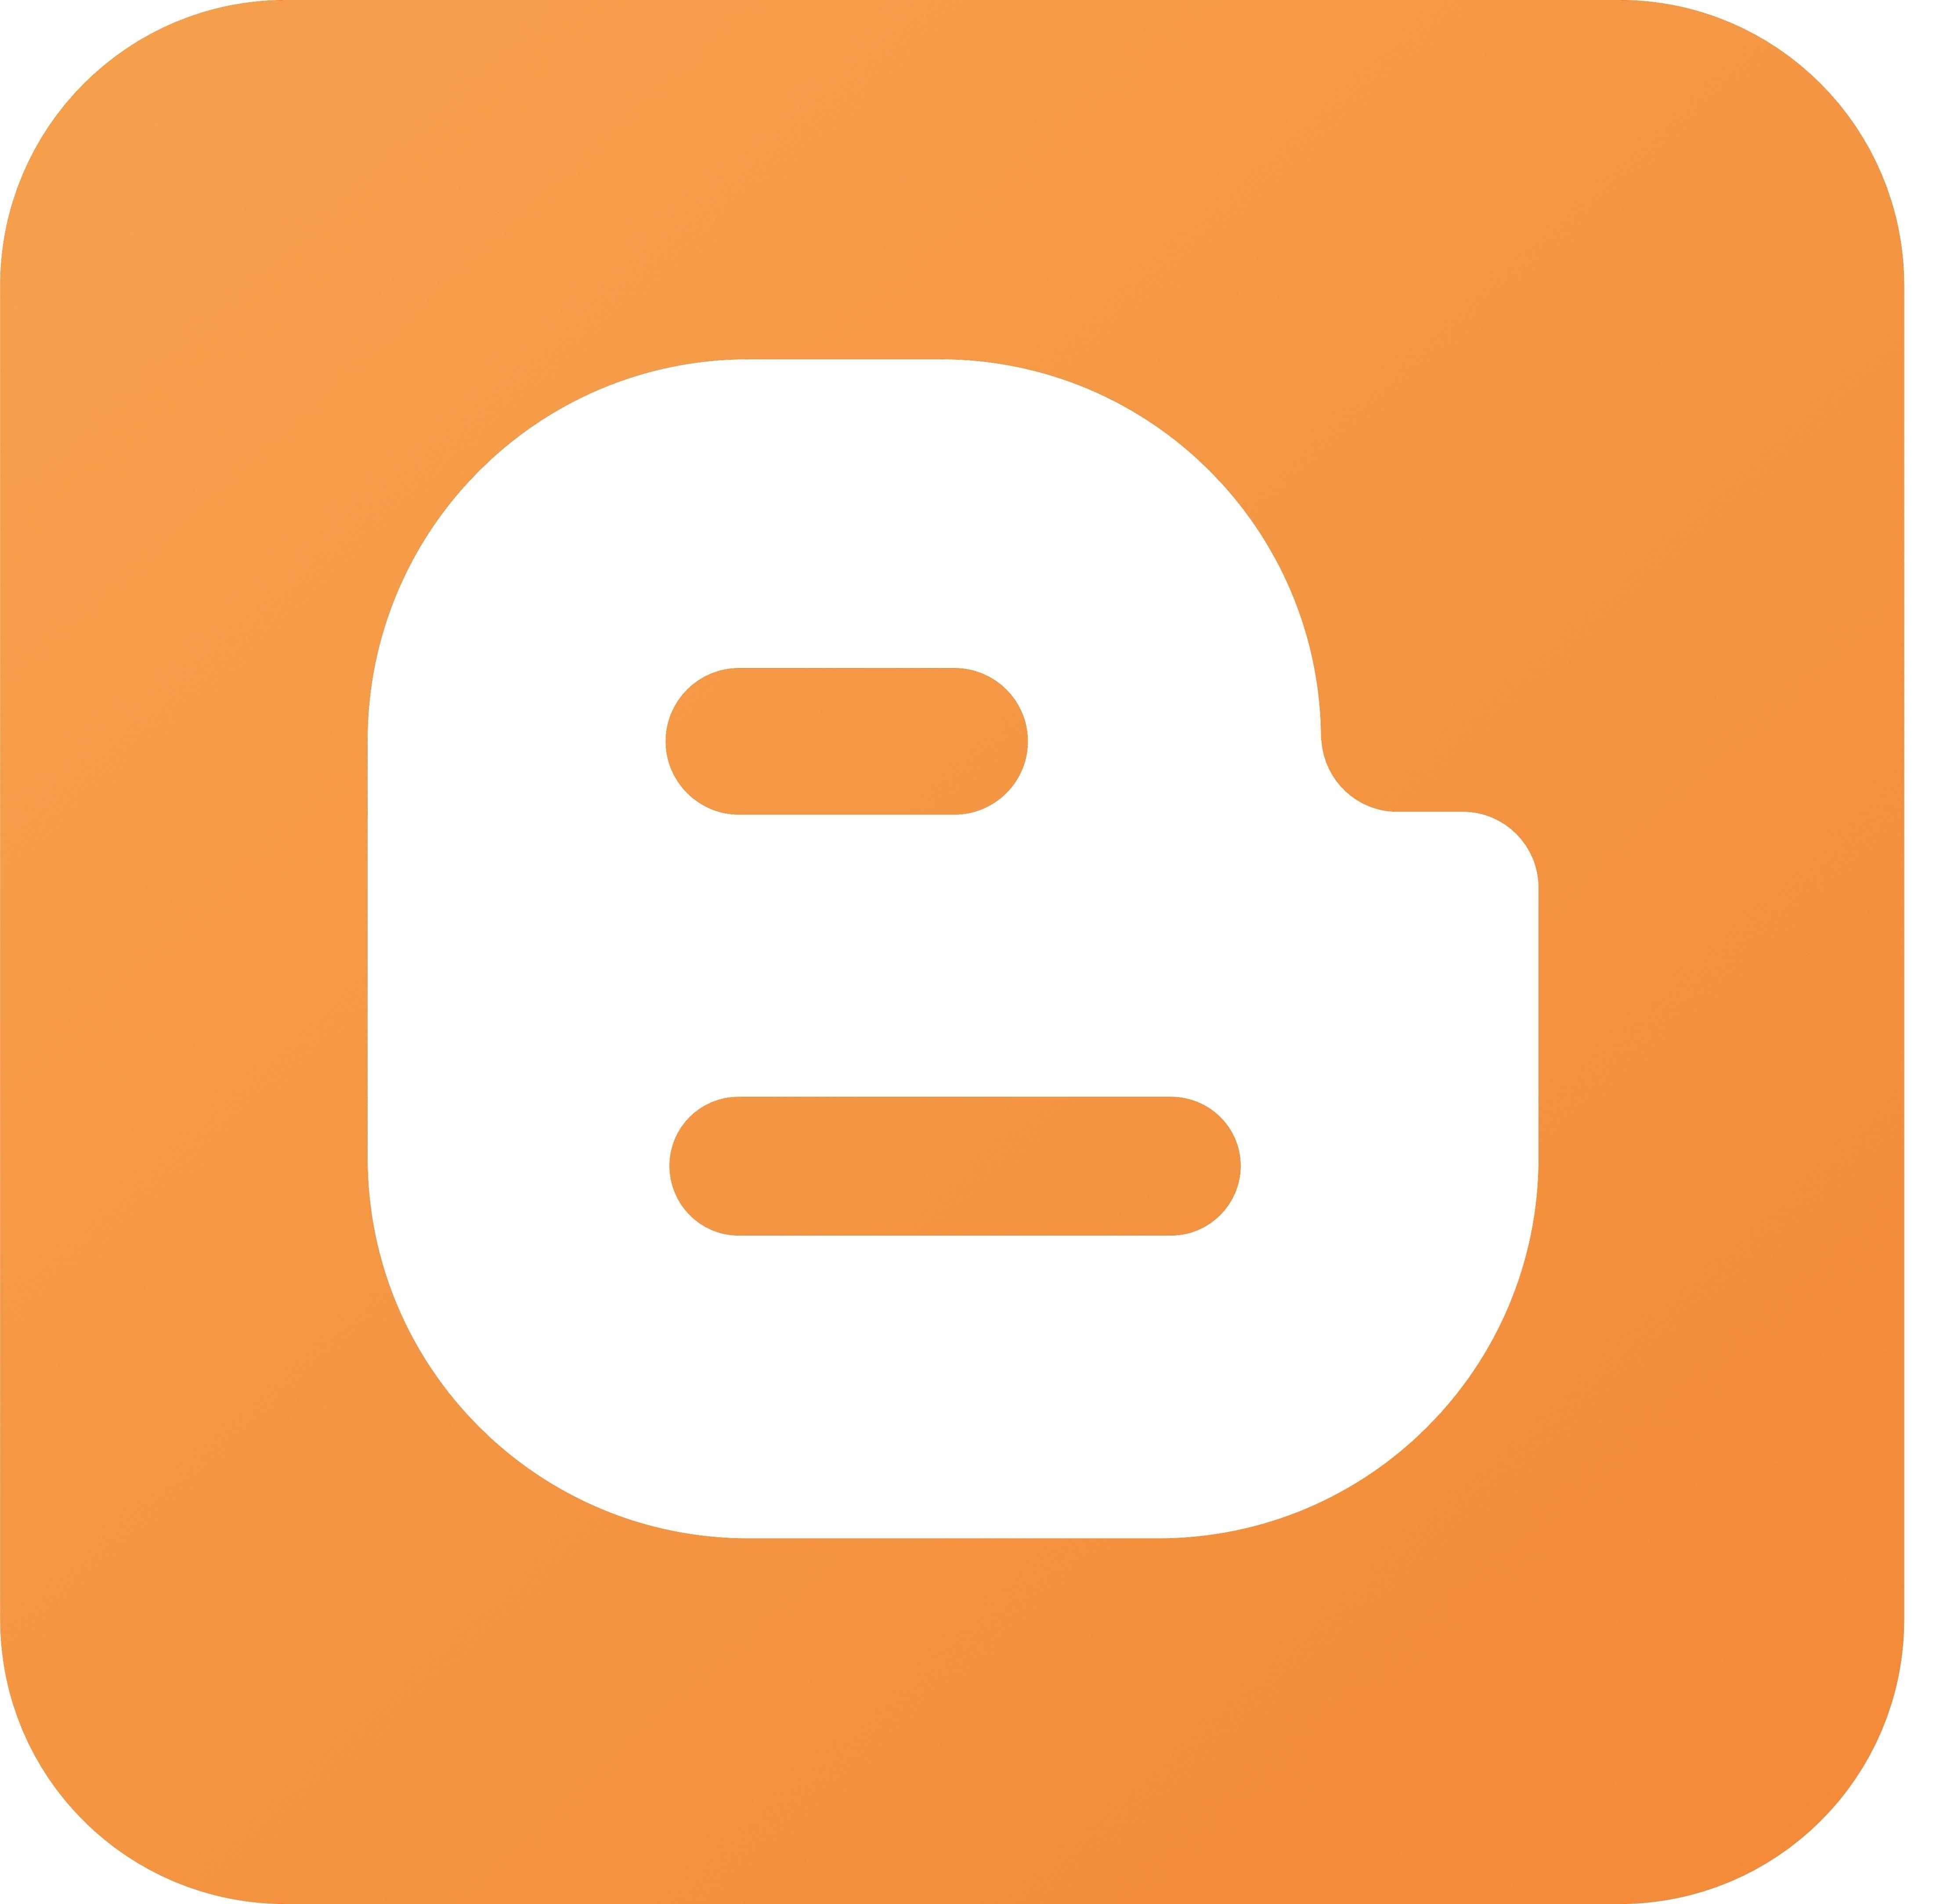 Part of Orange B Logo - Red orange b Logos